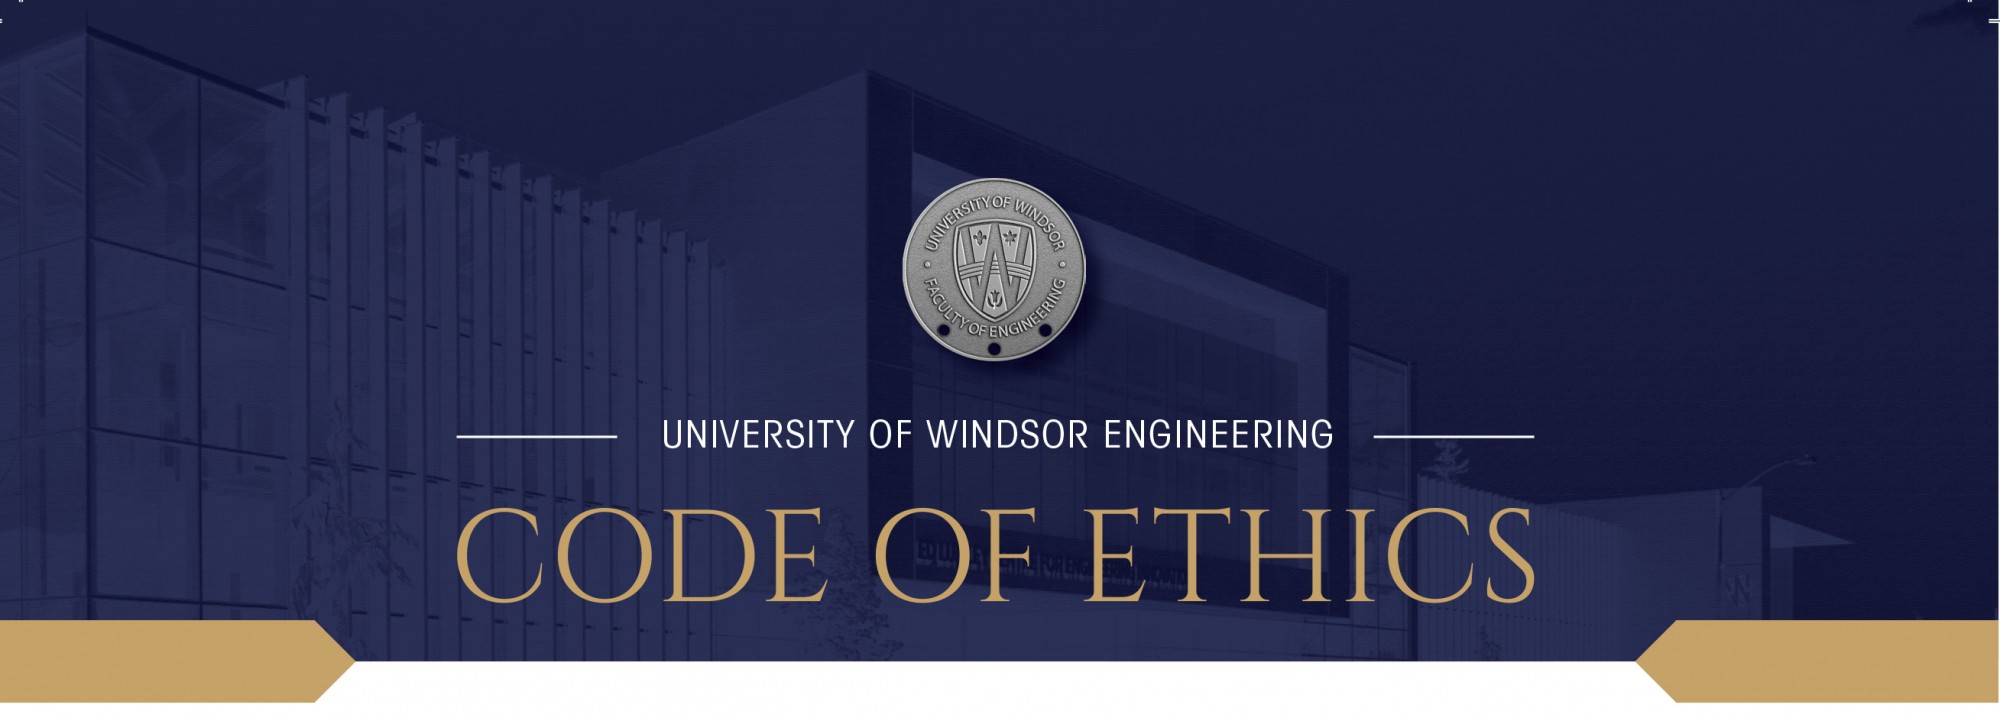 Code of ethics of engineering.